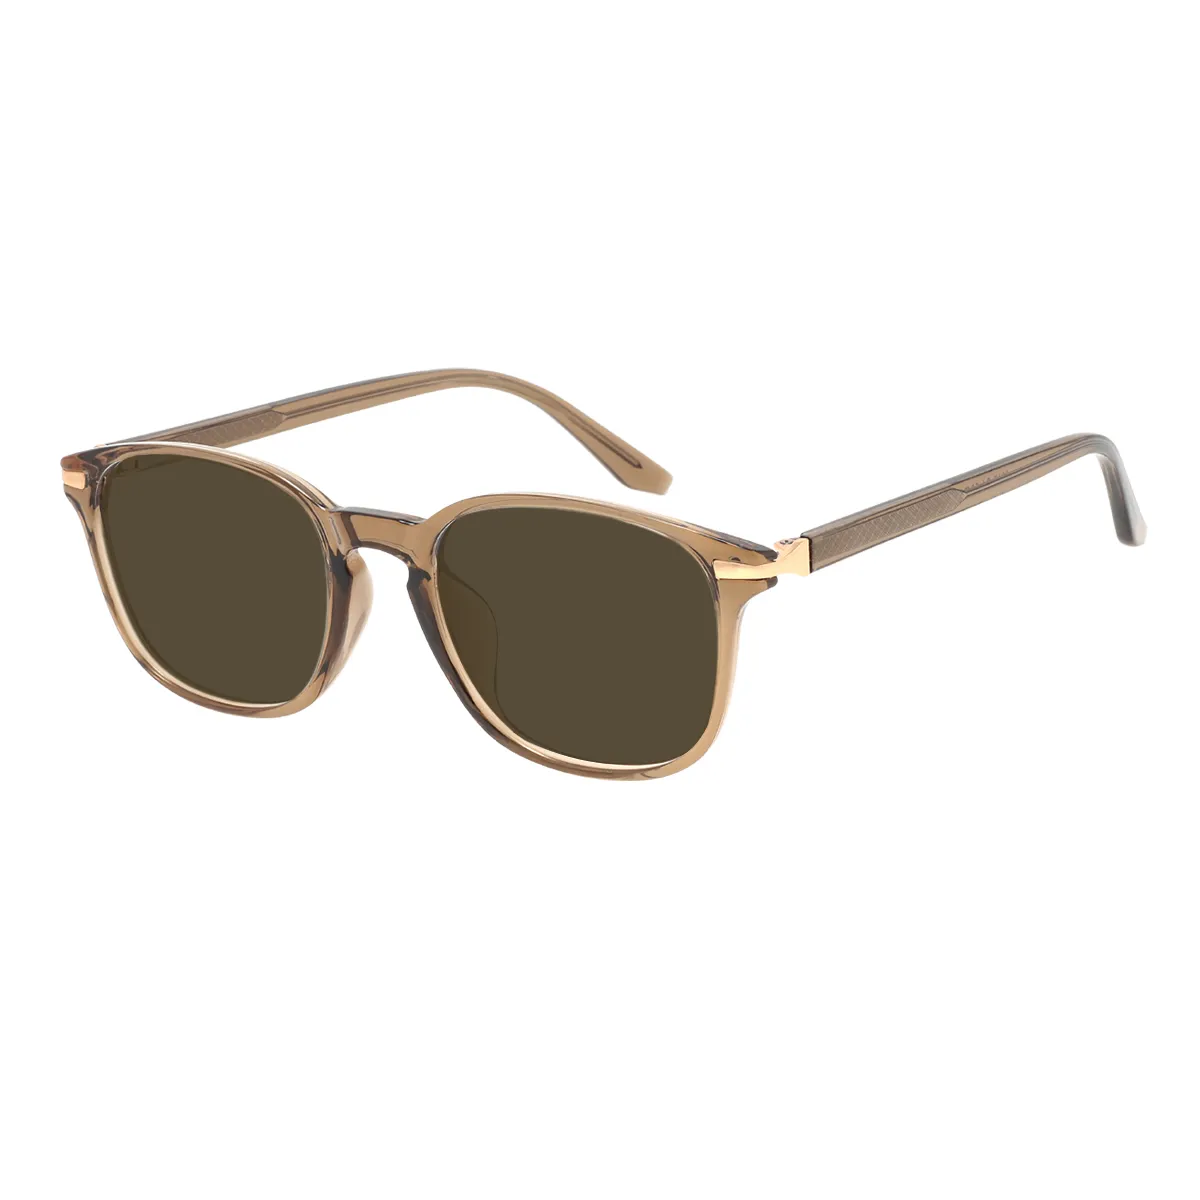 Emerson - Square Brown Sunglasses for Men & Women